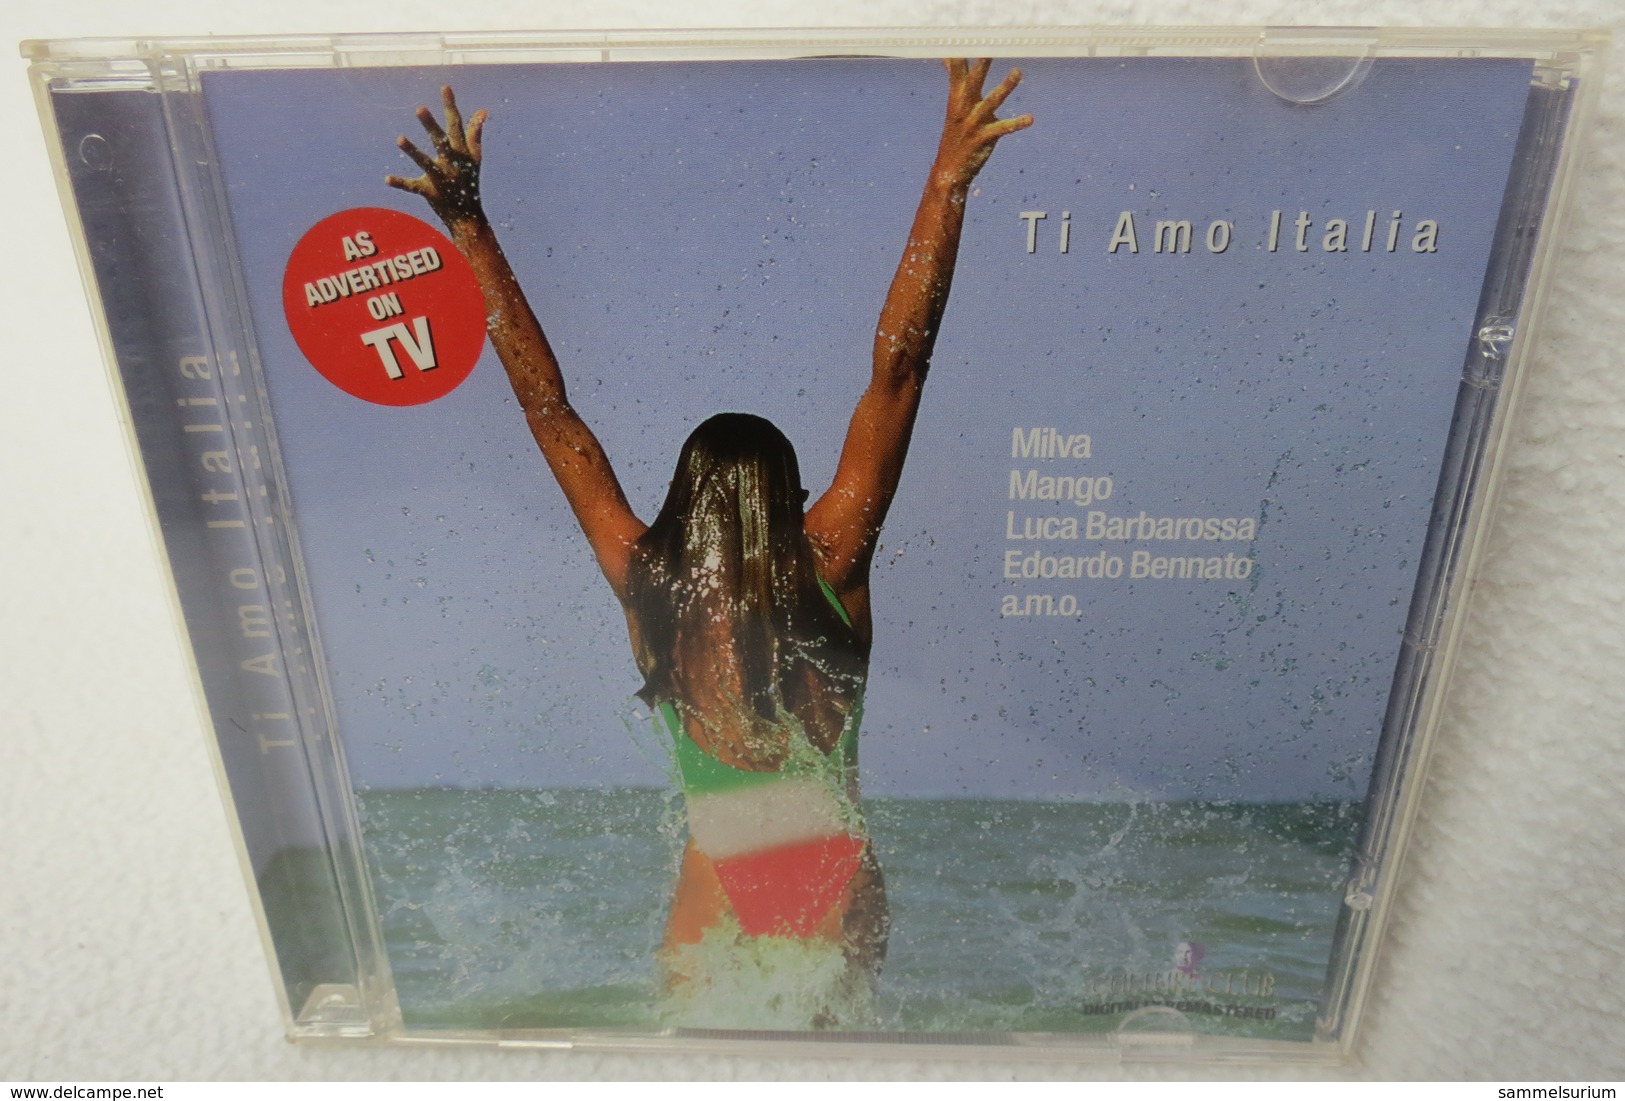 CD "Ti Amo Italia" - Other - Italian Music